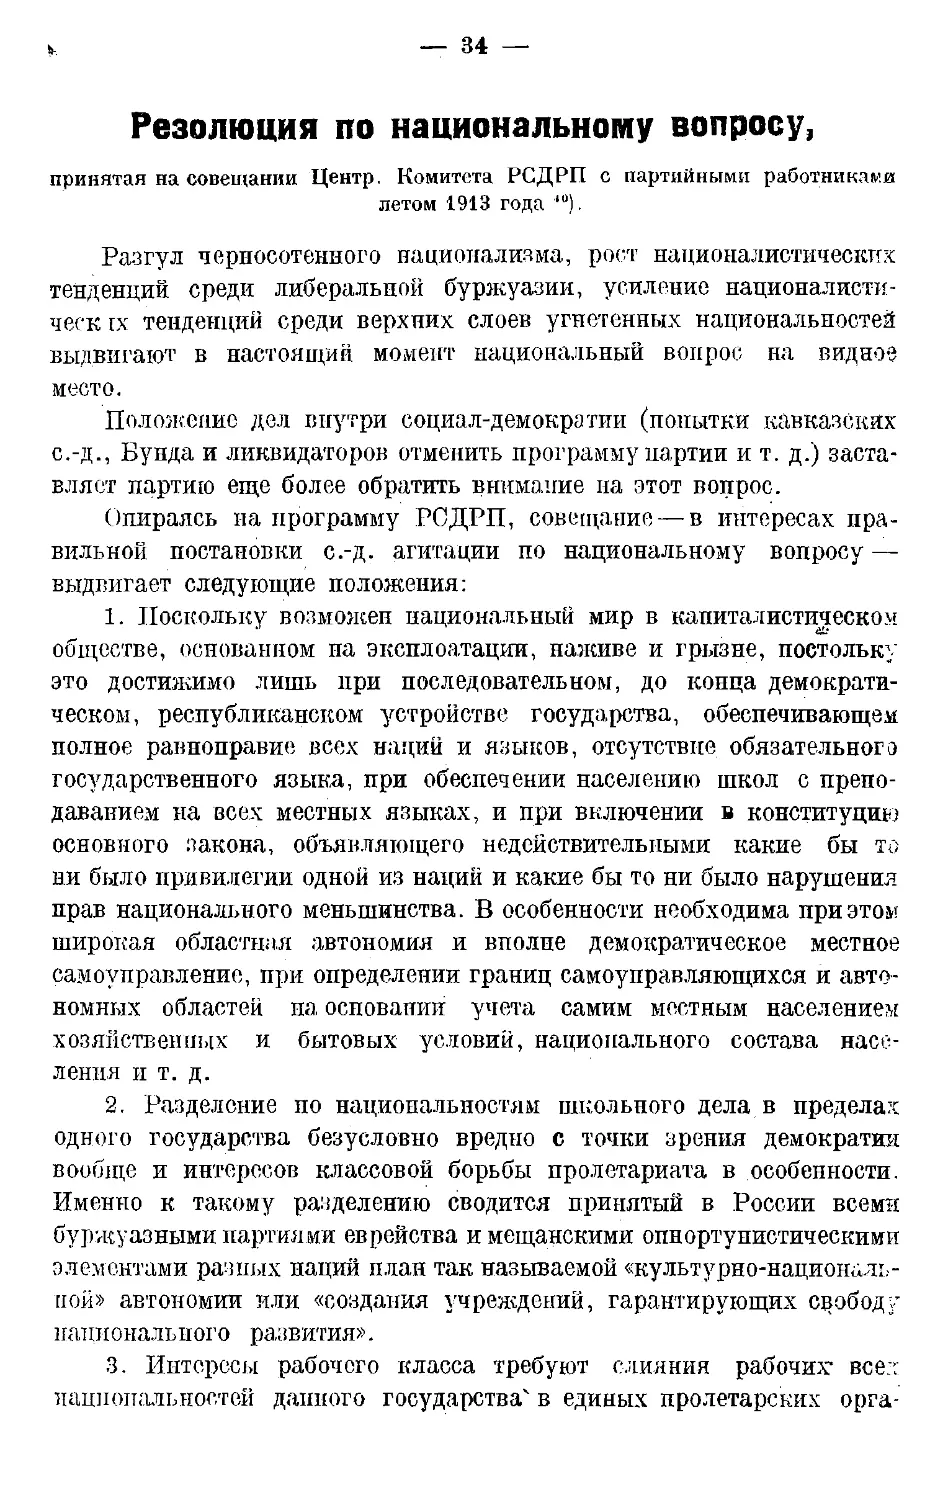 Резолюция по национальному вопросу, принятая на совещании Центр Комитета РСДРП с партийными работниками летом 1913 года.